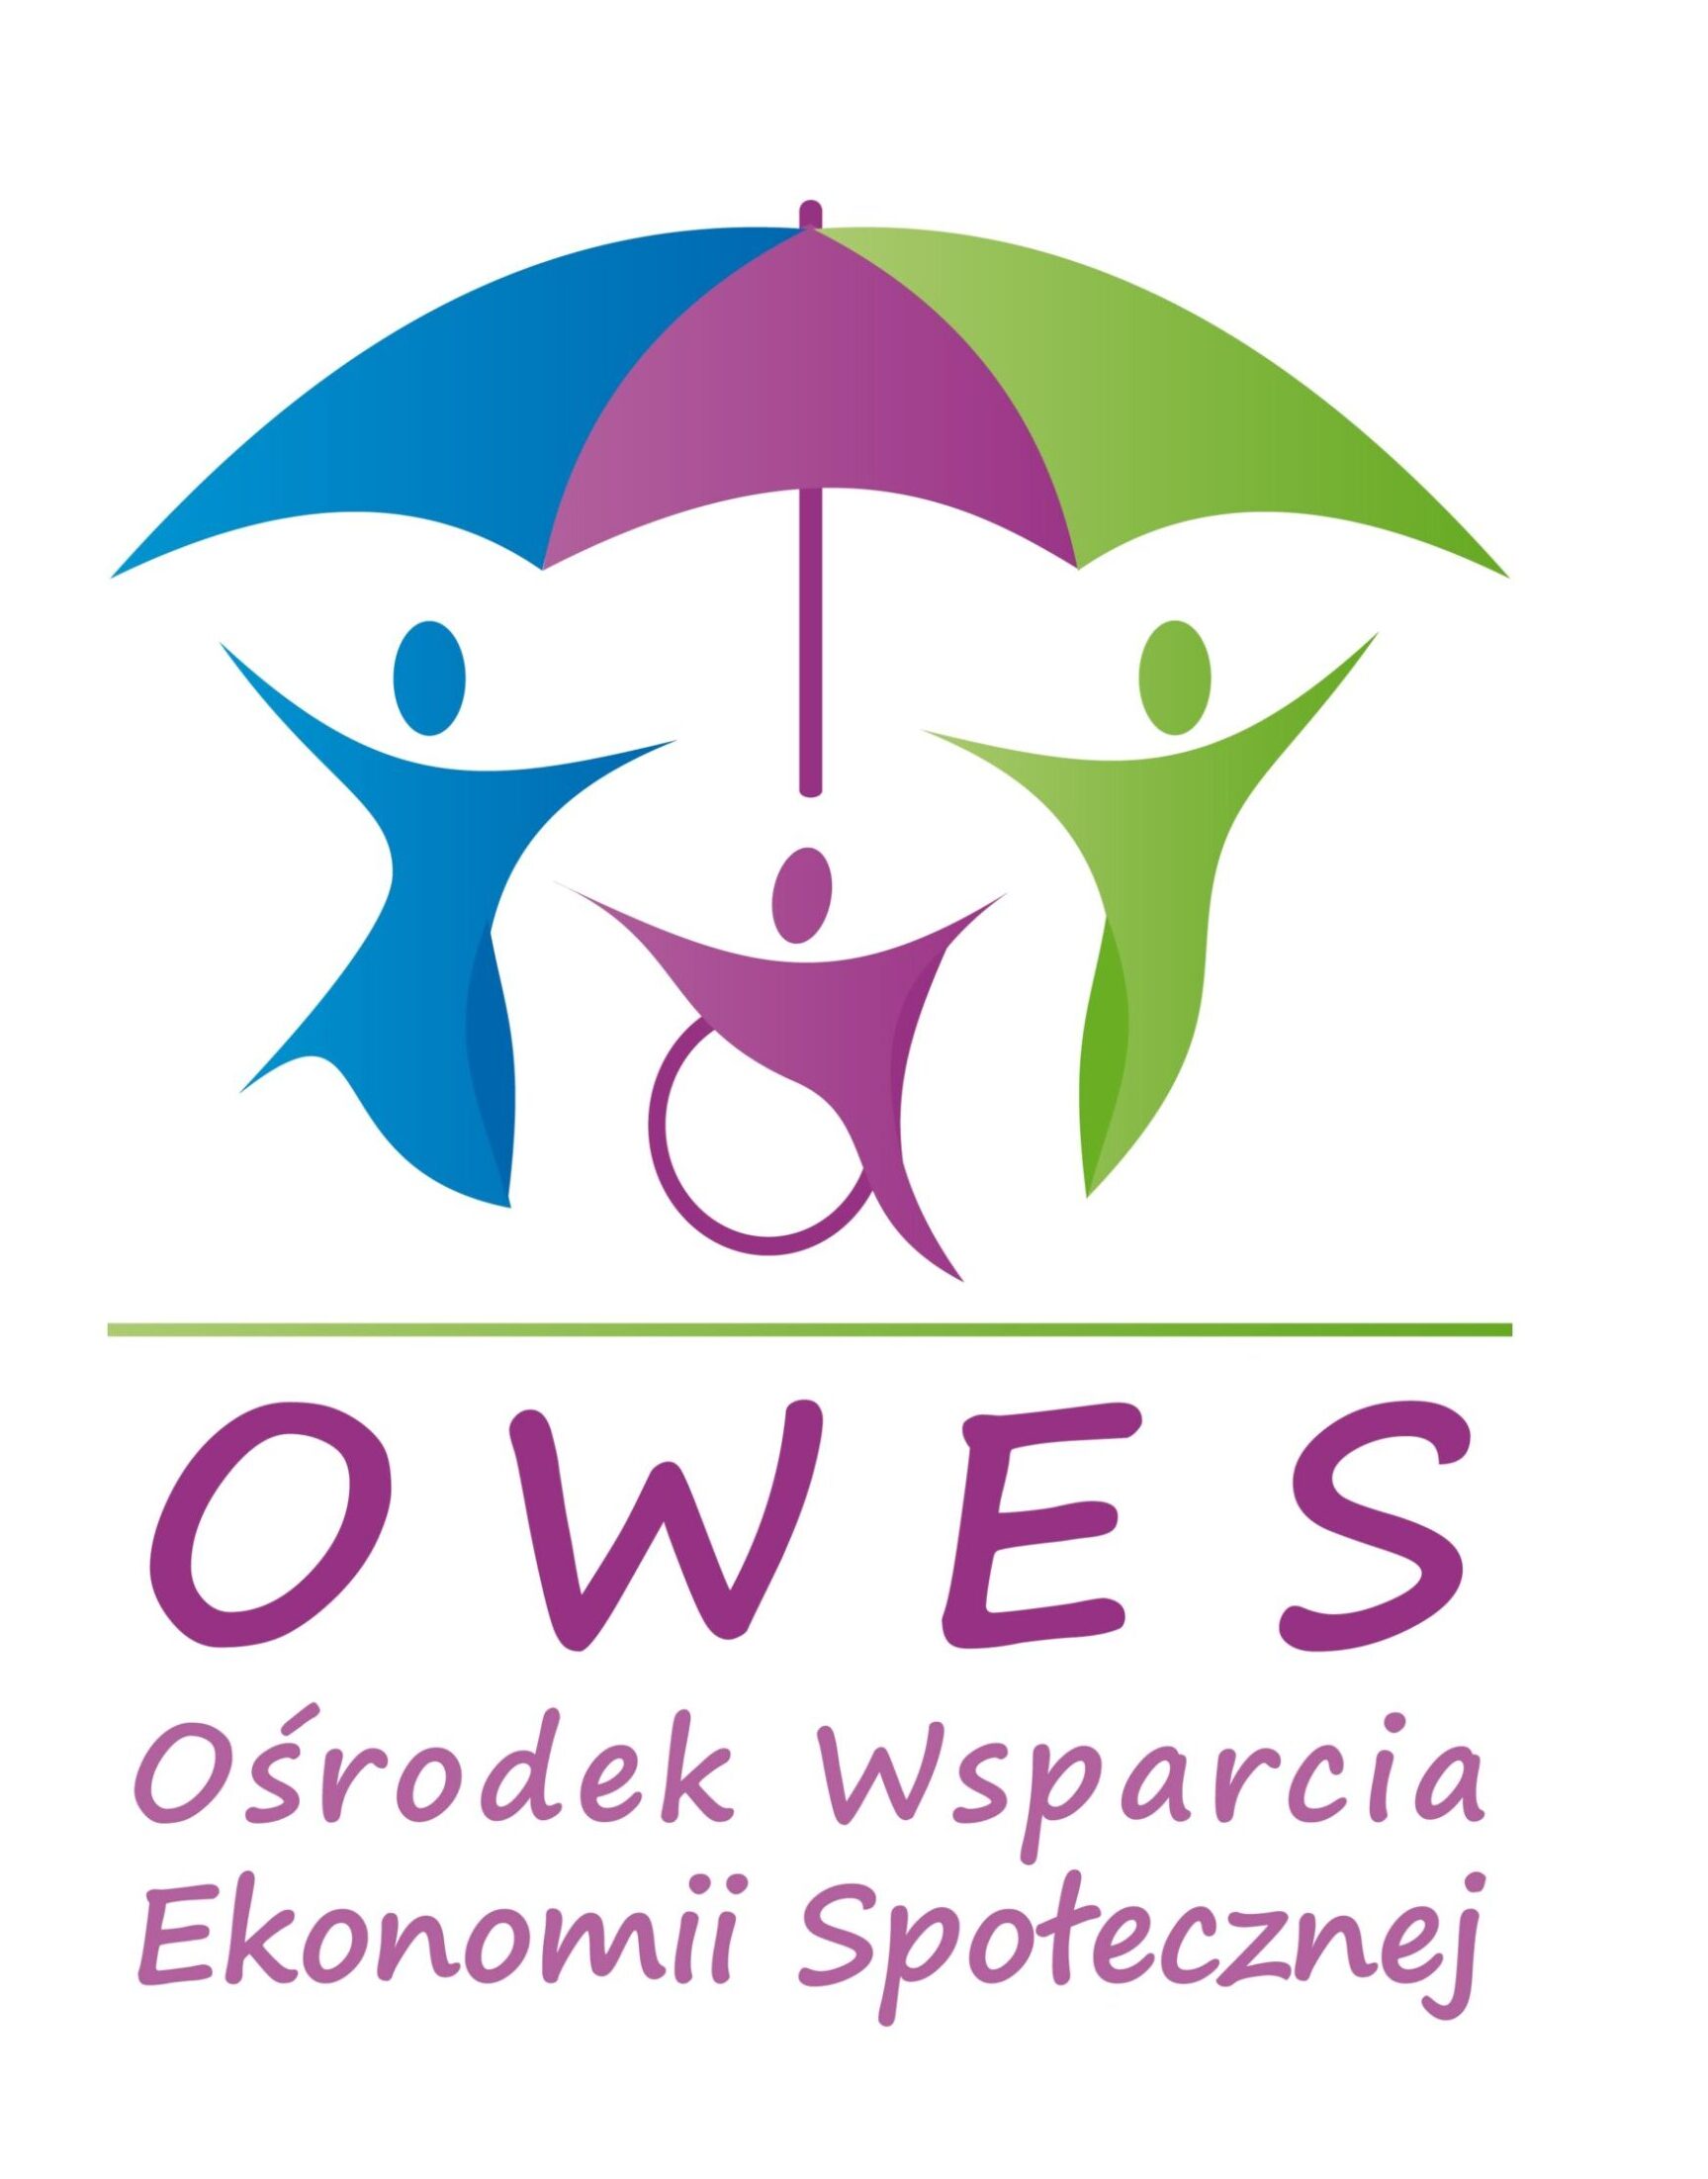 logo Ośrodka Wsparcia Ekonomii Społecznej - 3 postacie, w tym jedna na wózku inwalidzkim pod jednym parasolem